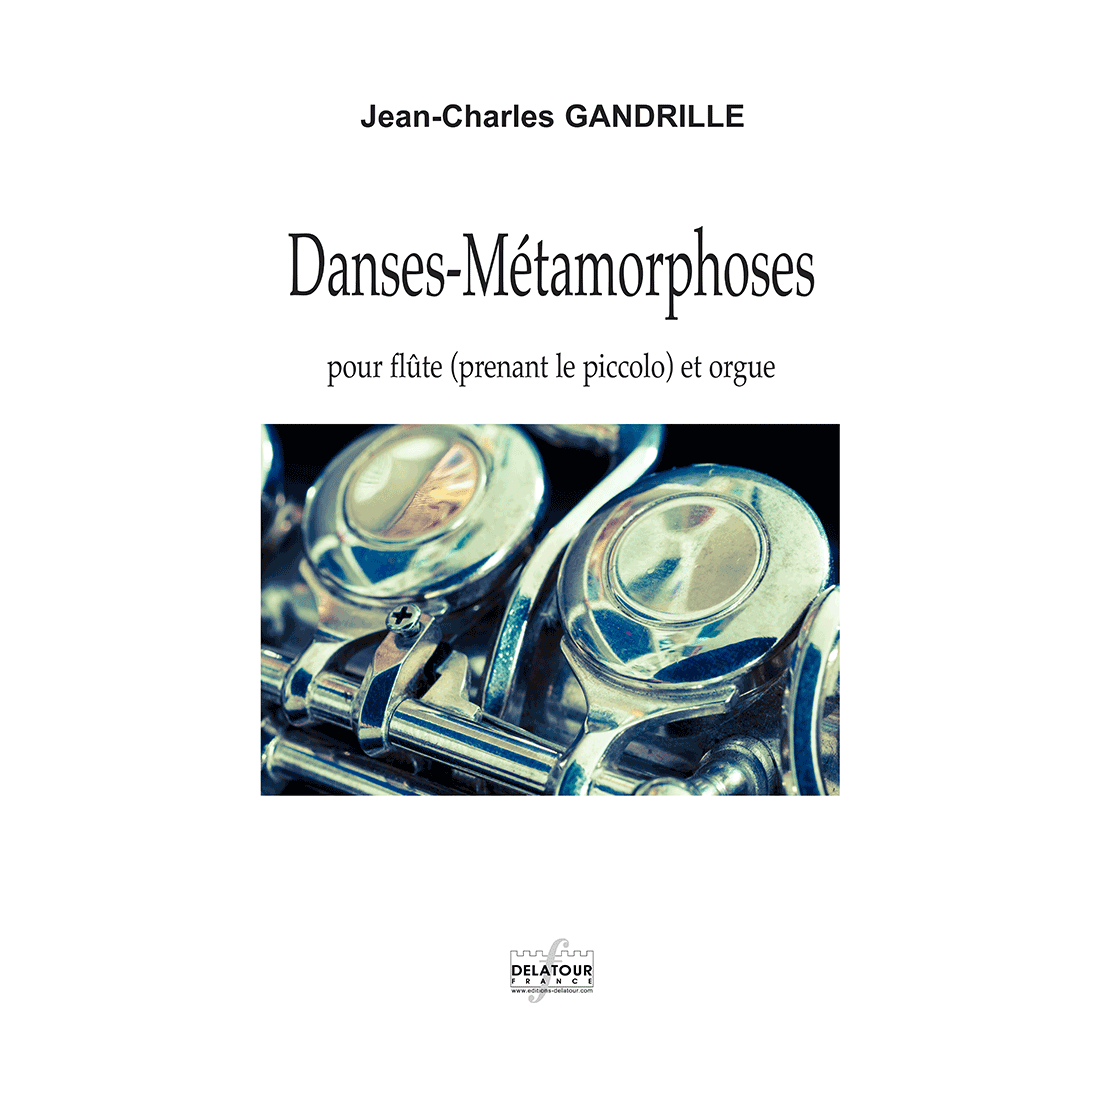 Danses-Métamorphoses pour flûte et orgue